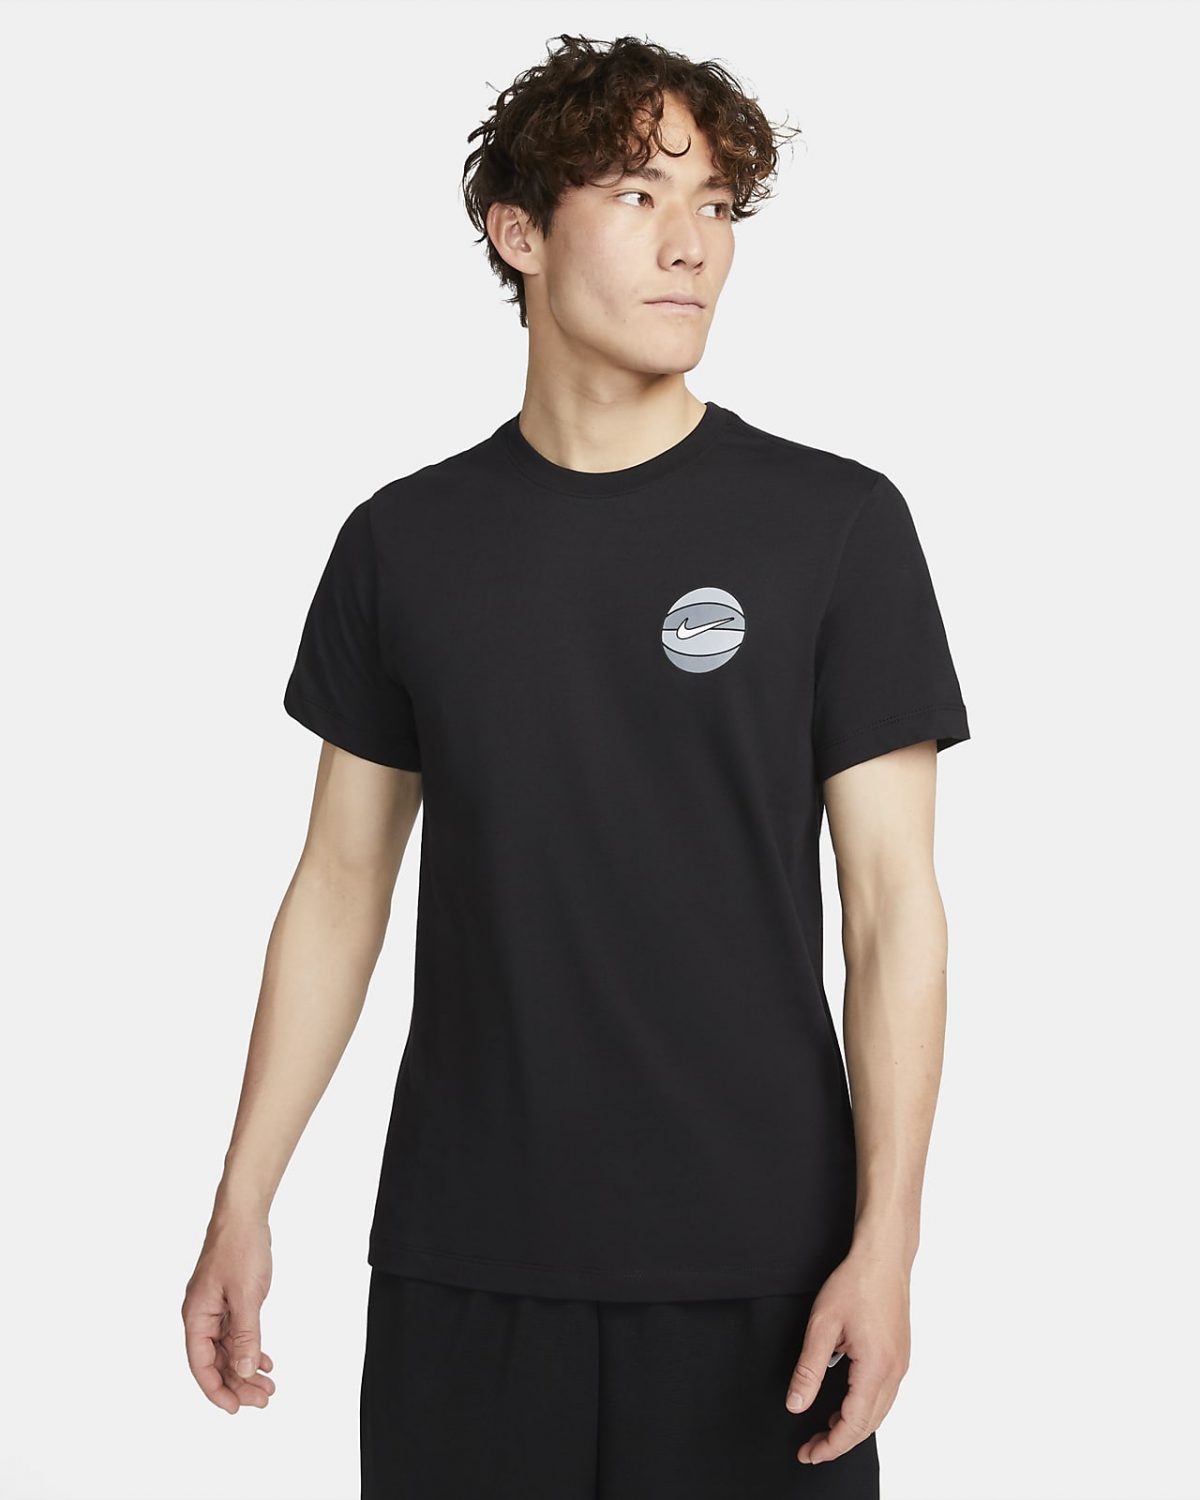 Мужская футболка Nike Dri-FIT черная фото